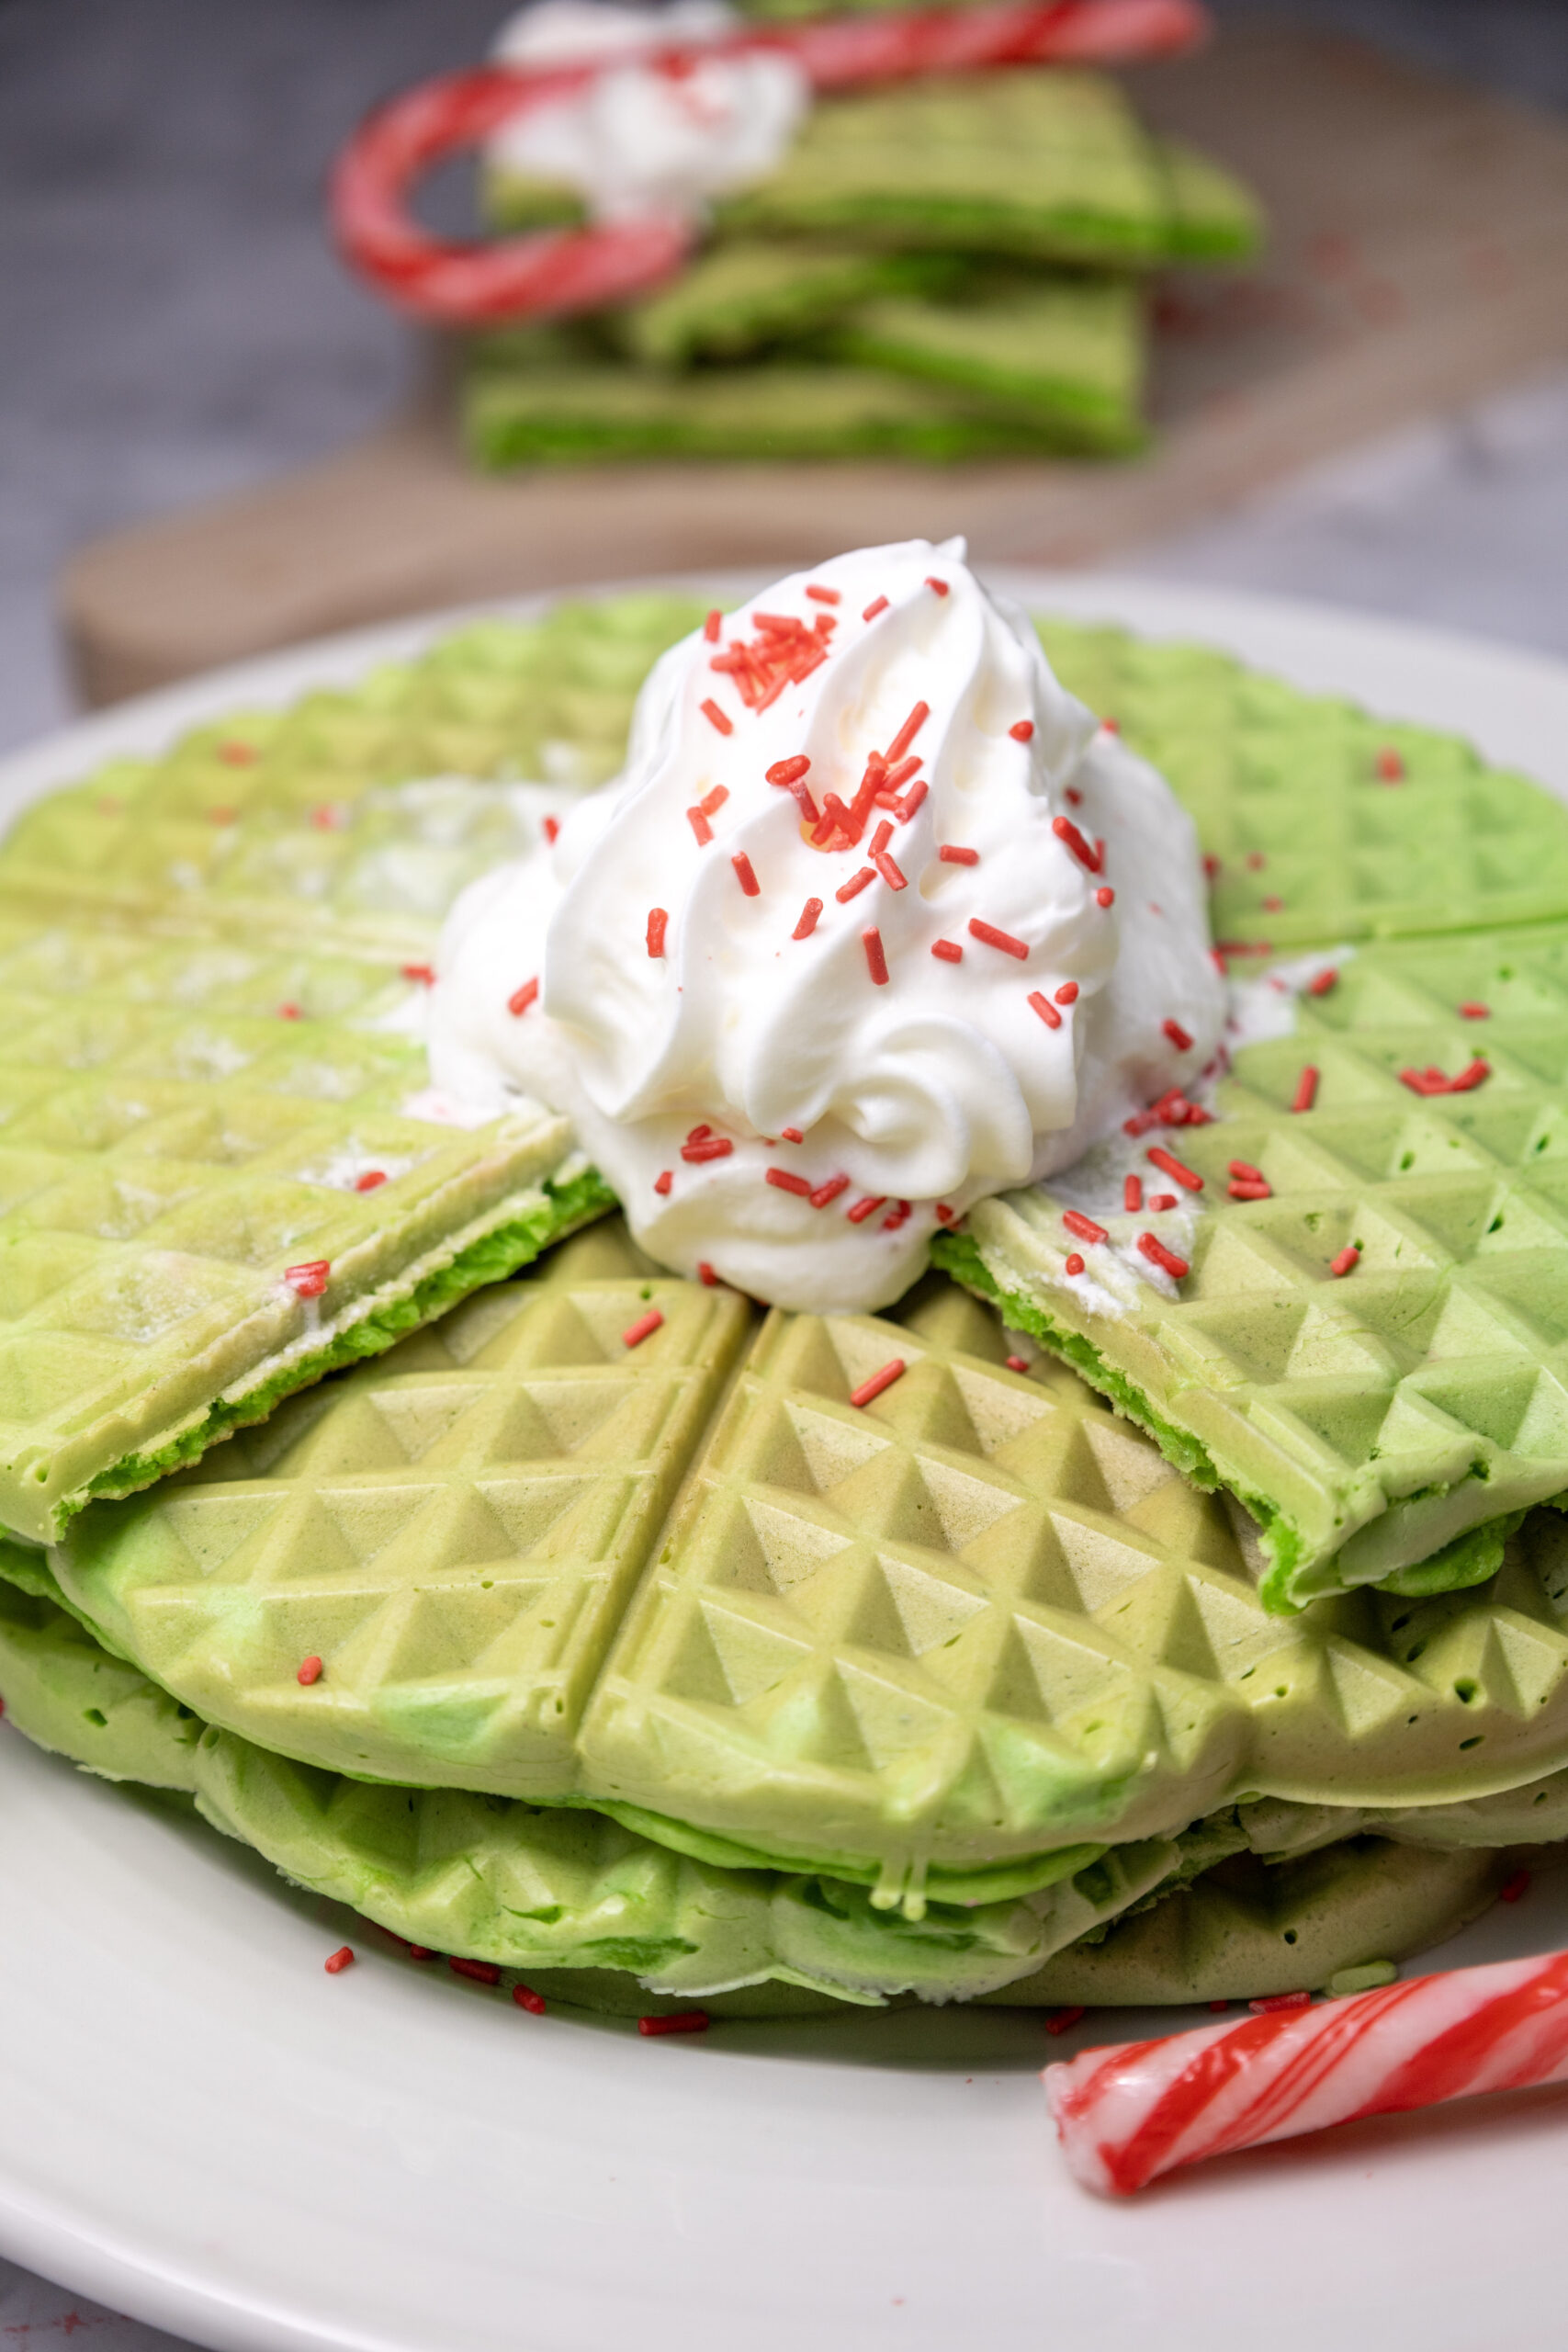 The Best Green Waffles for Grinch Breakfast Ideas